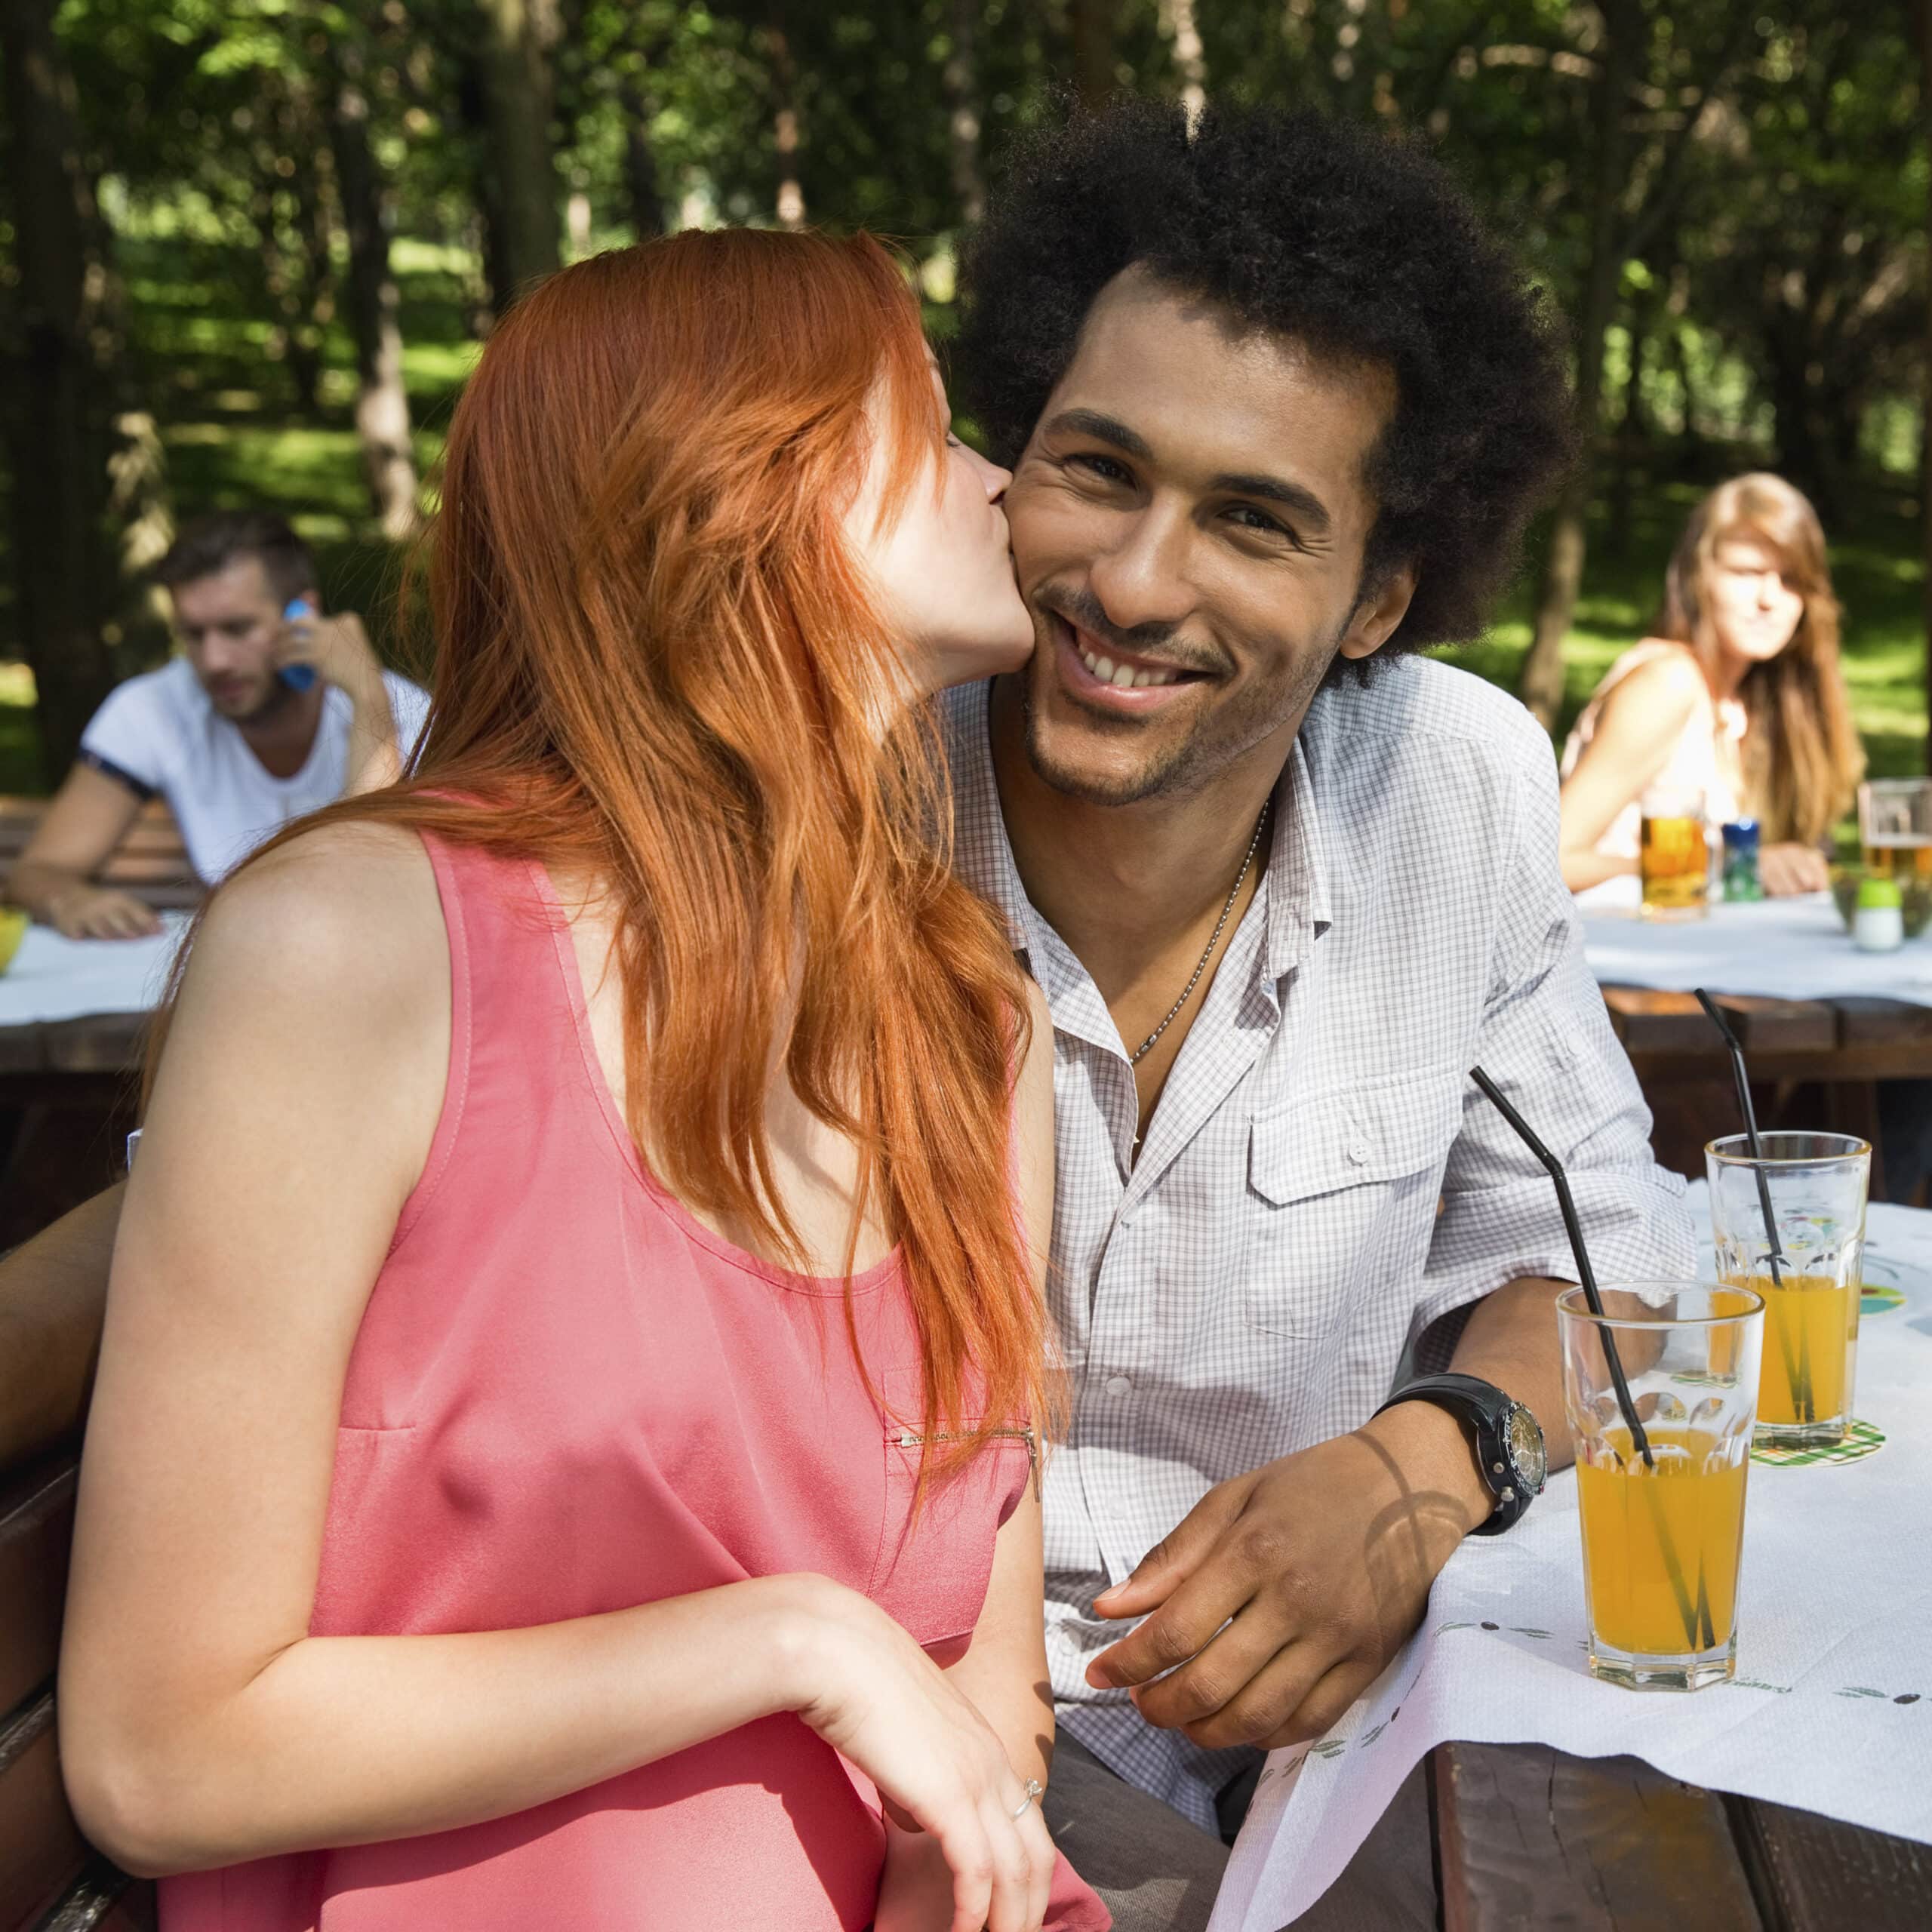 Eine Frau mit roten Haaren küsst einen lächelnden Mann mit lockigem Haar an einem sonnigen Picknicktisch im Park auf die Wange, im Hintergrund sind andere Menschen zu sehen. Getränke und ein sonniger Tag tragen zu der freudigen Szene bei. © Fotografie Tomas Rodriguez